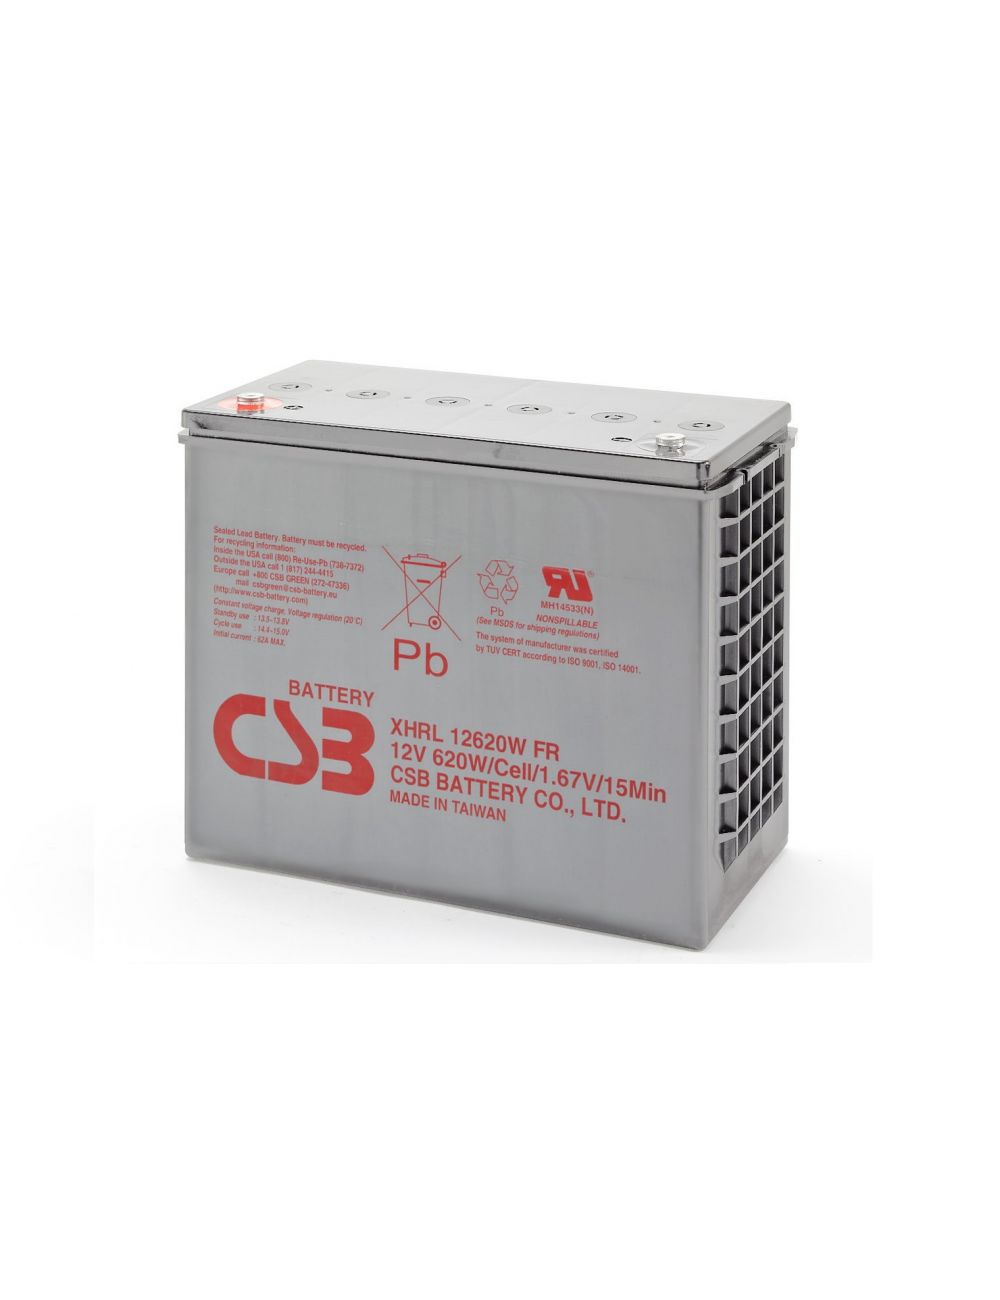 Batería 12V 620W/celda CSB serie XHRL - CSB-XHRL12620W -  -  - 1